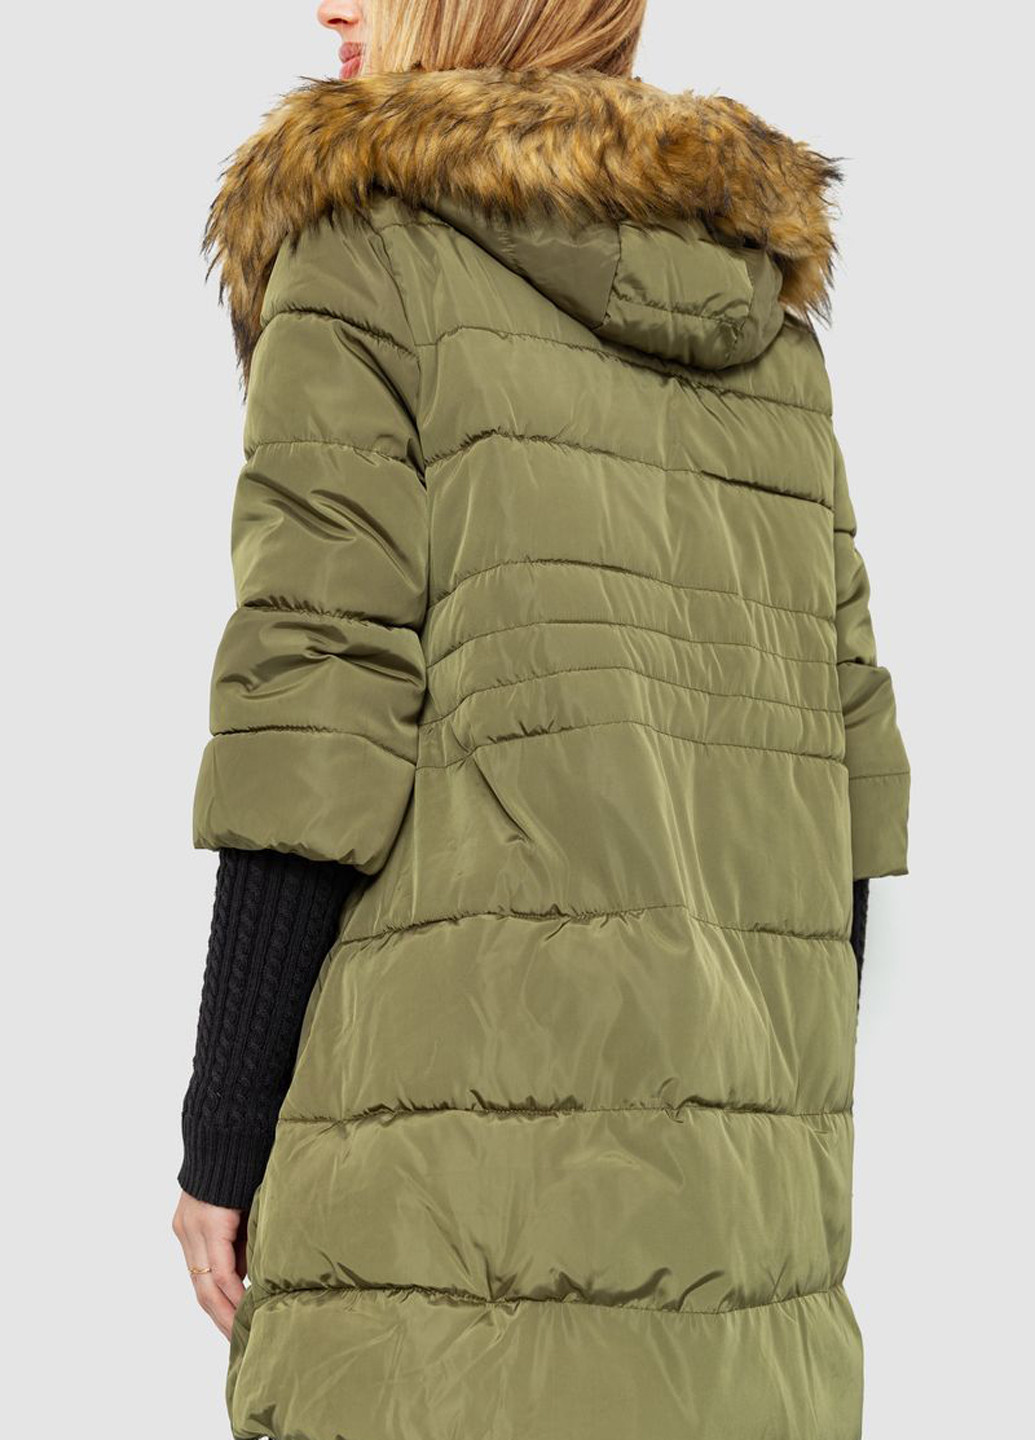 Оливкова (хакі) зимня куртка Ager